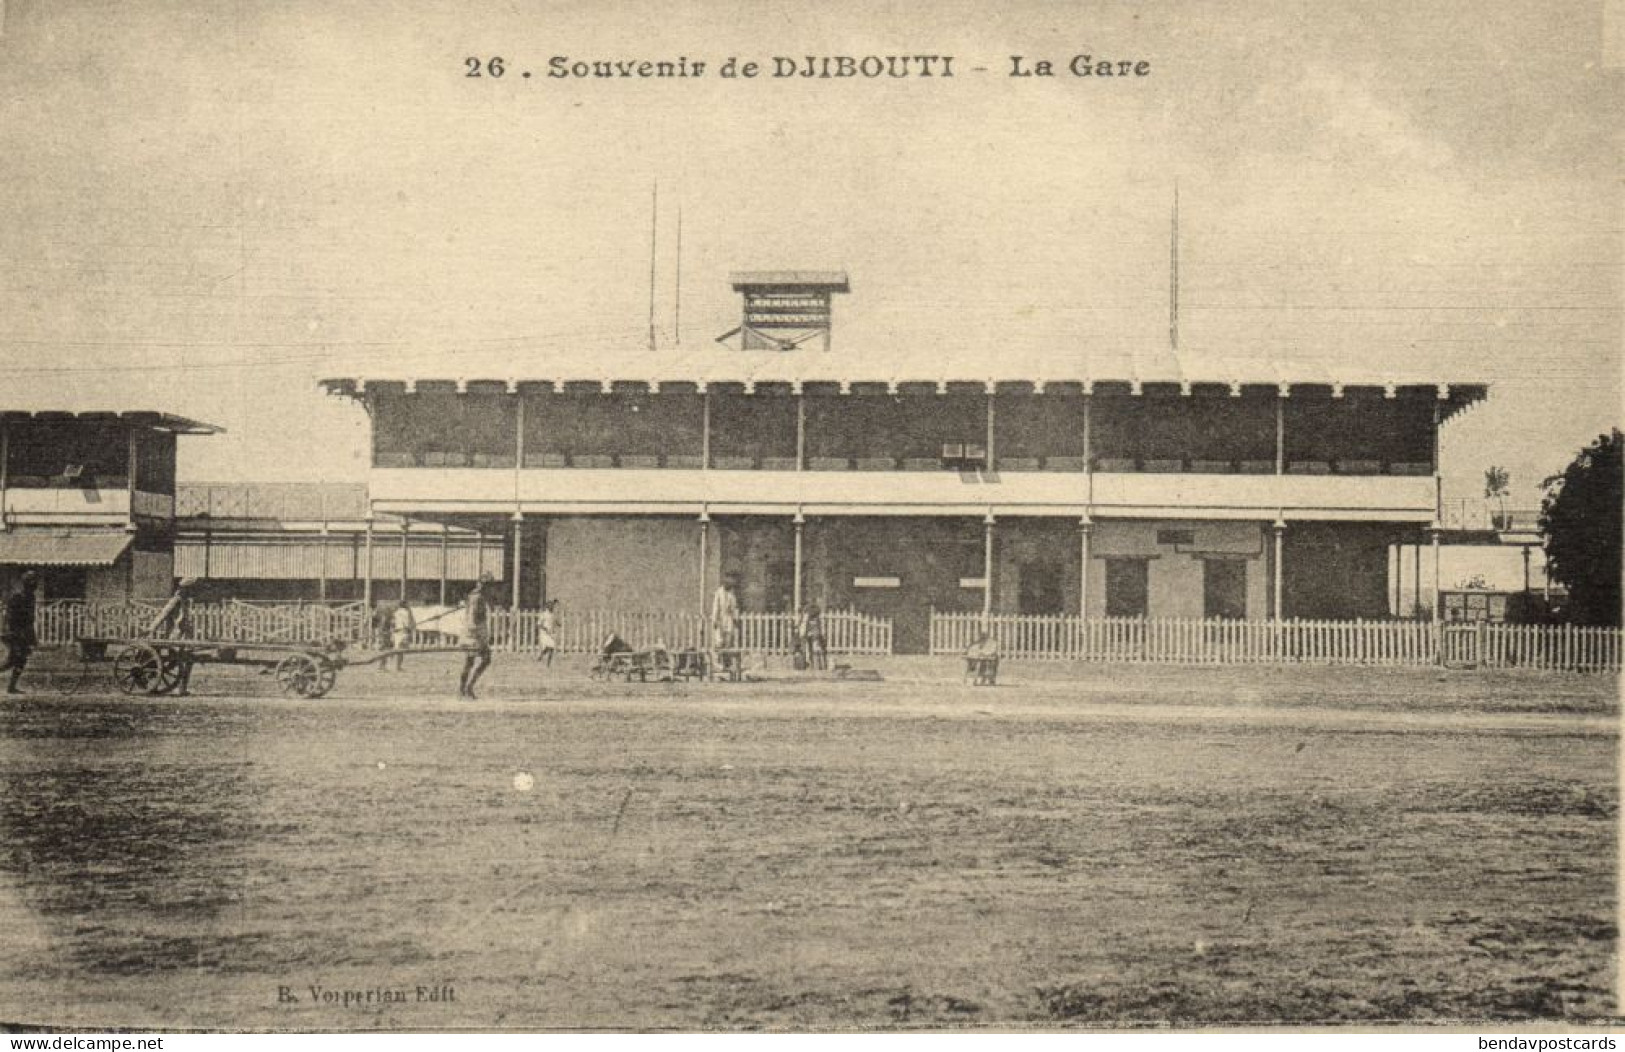 Djibouti, DJIBOUTI, La Gare, Railway Station (1910s) Postcard - Djibouti